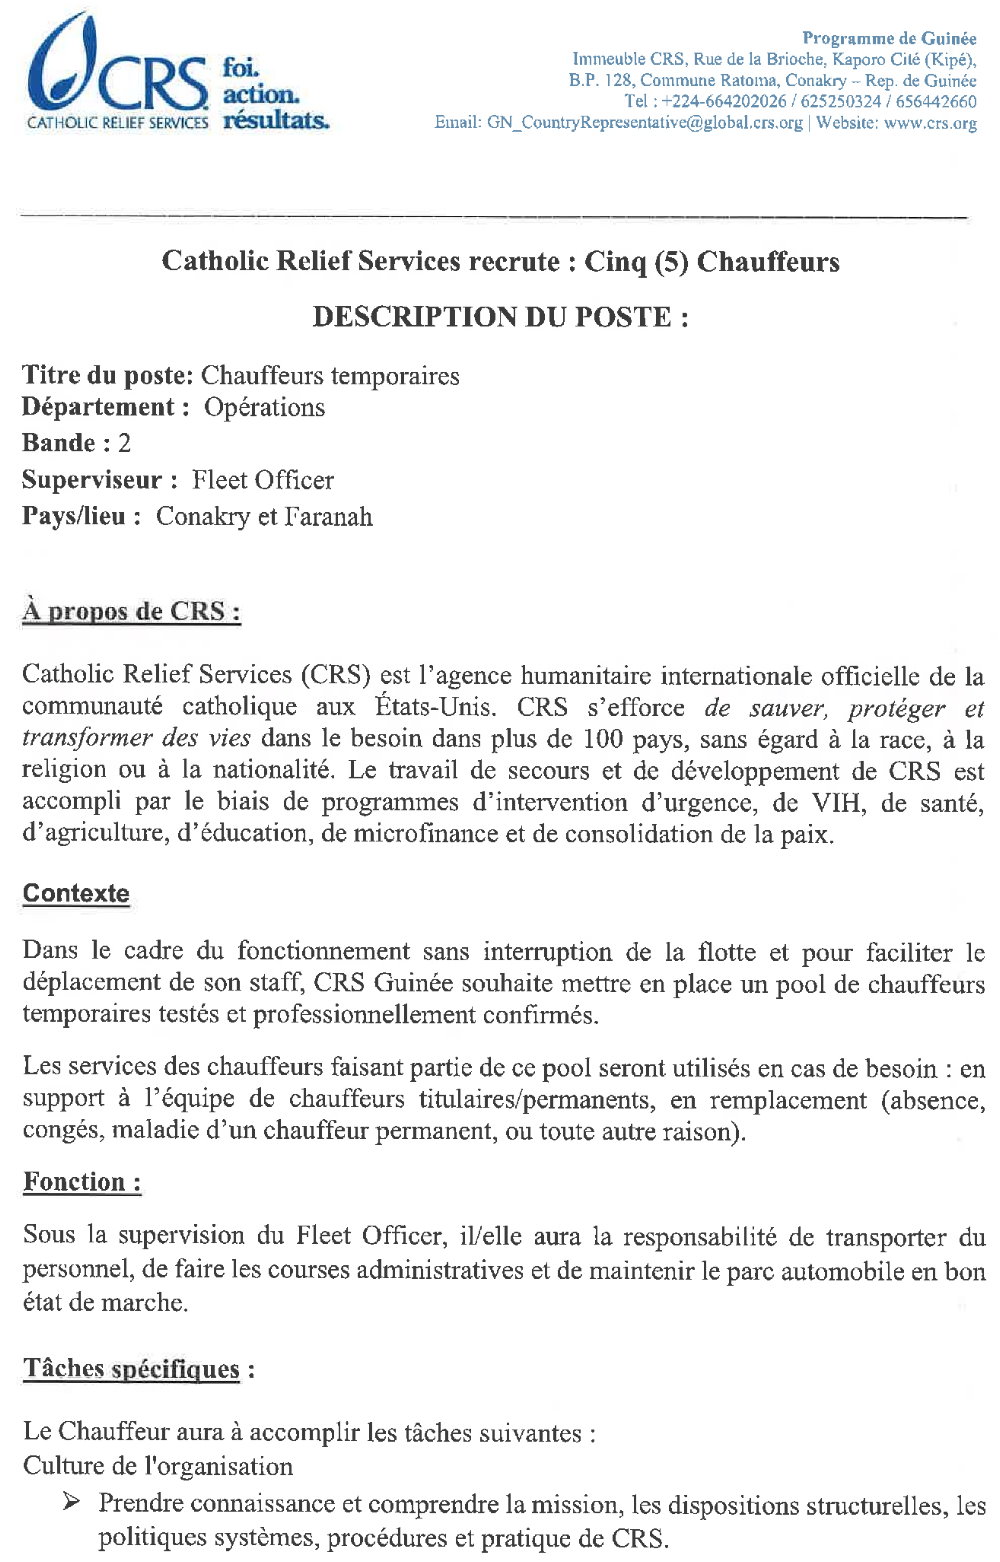 Appel d’offres pour le recrutement de cinq (5) chauffeurs pur CRS Guinée | Page 1